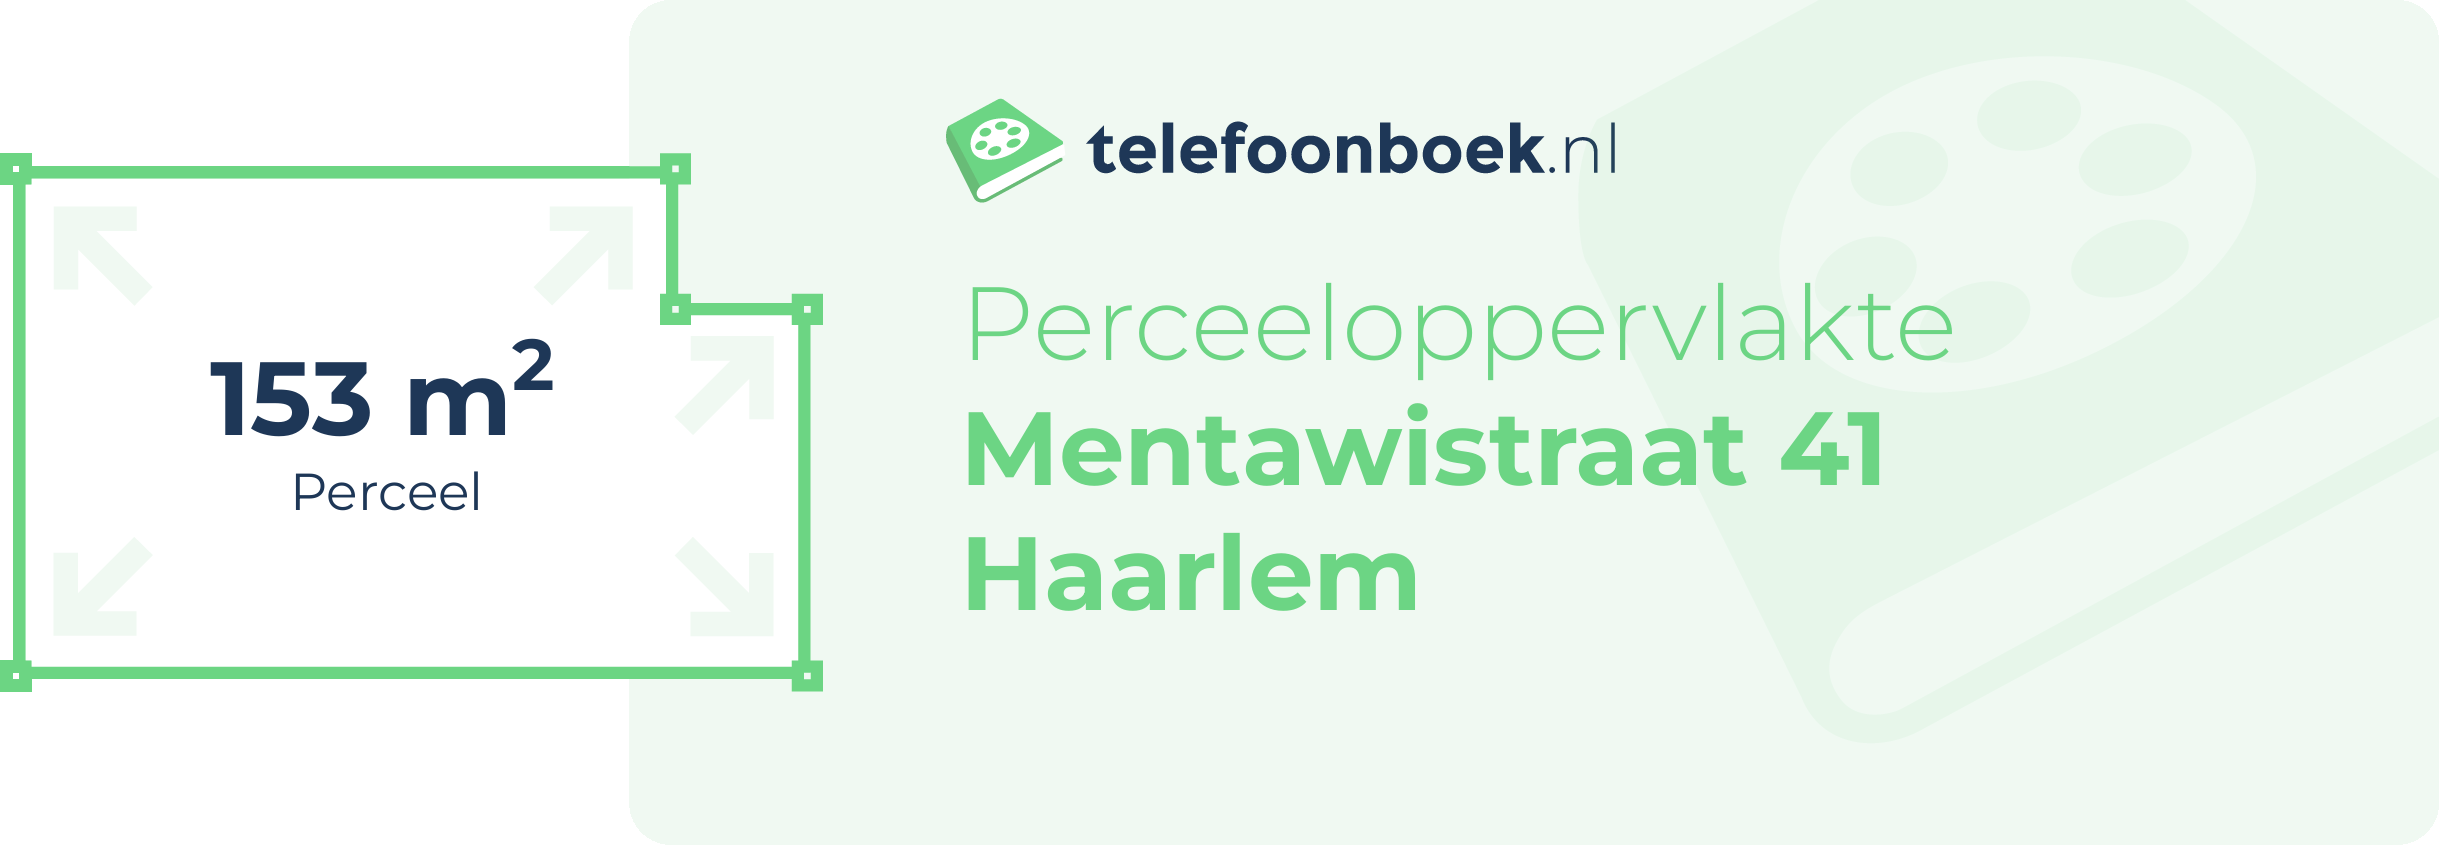 Perceeloppervlakte Mentawistraat 41 Haarlem